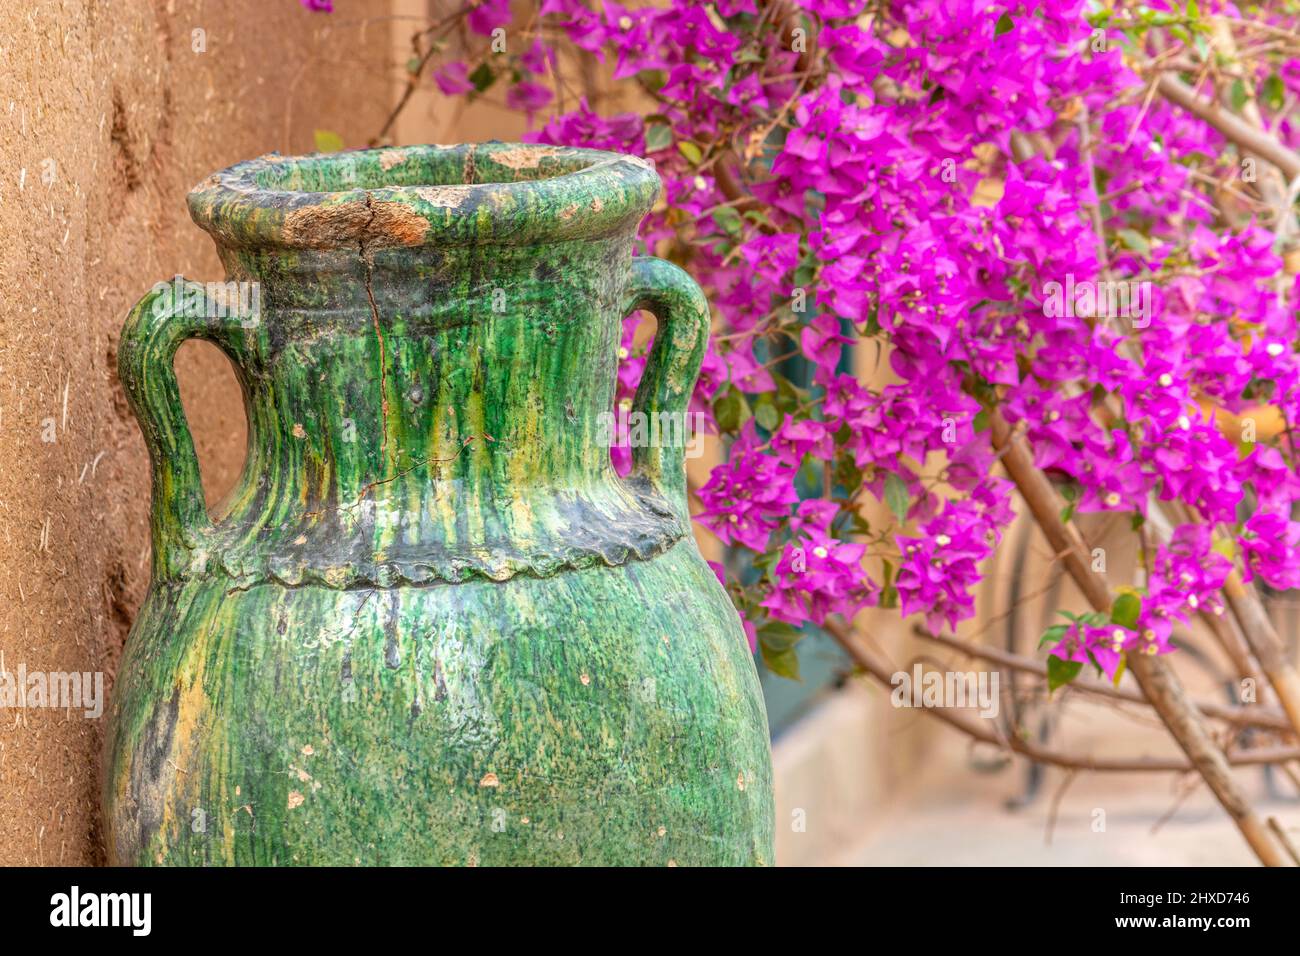 Céramique verte traditionnelle de Tamegroute au Maroc. Poterie berbère et poterie marocaine. Banque D'Images